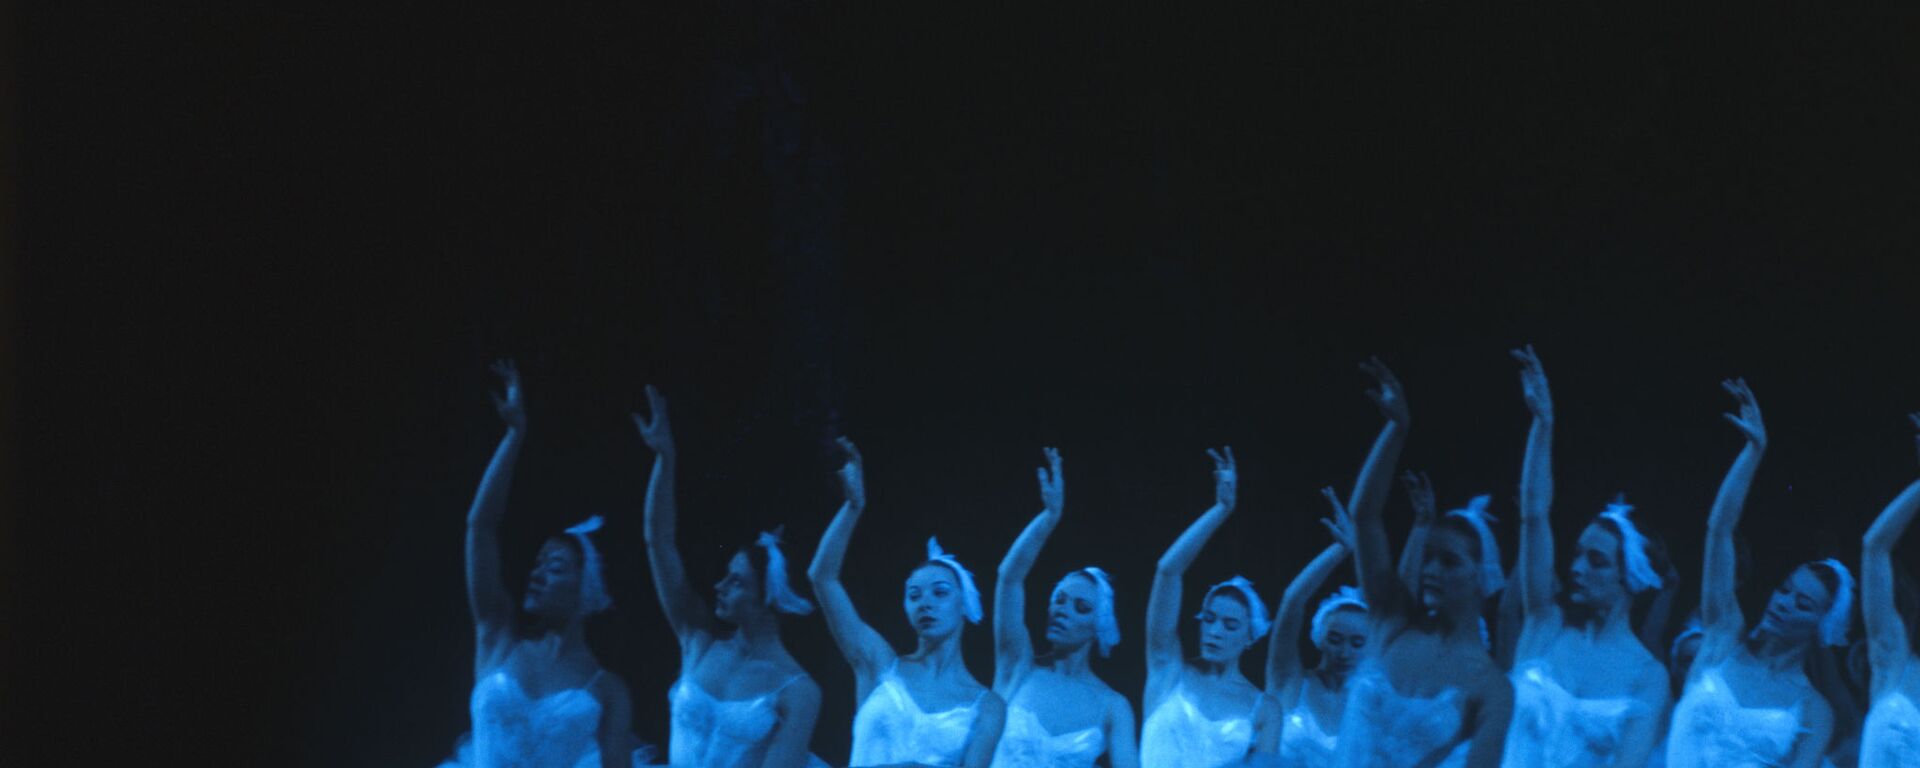 Vở ballet «Hồ thiên nga» trên sân khấu Nhà hát lớn ở Moskva - Sputnik Việt Nam, 1920, 10.12.2020